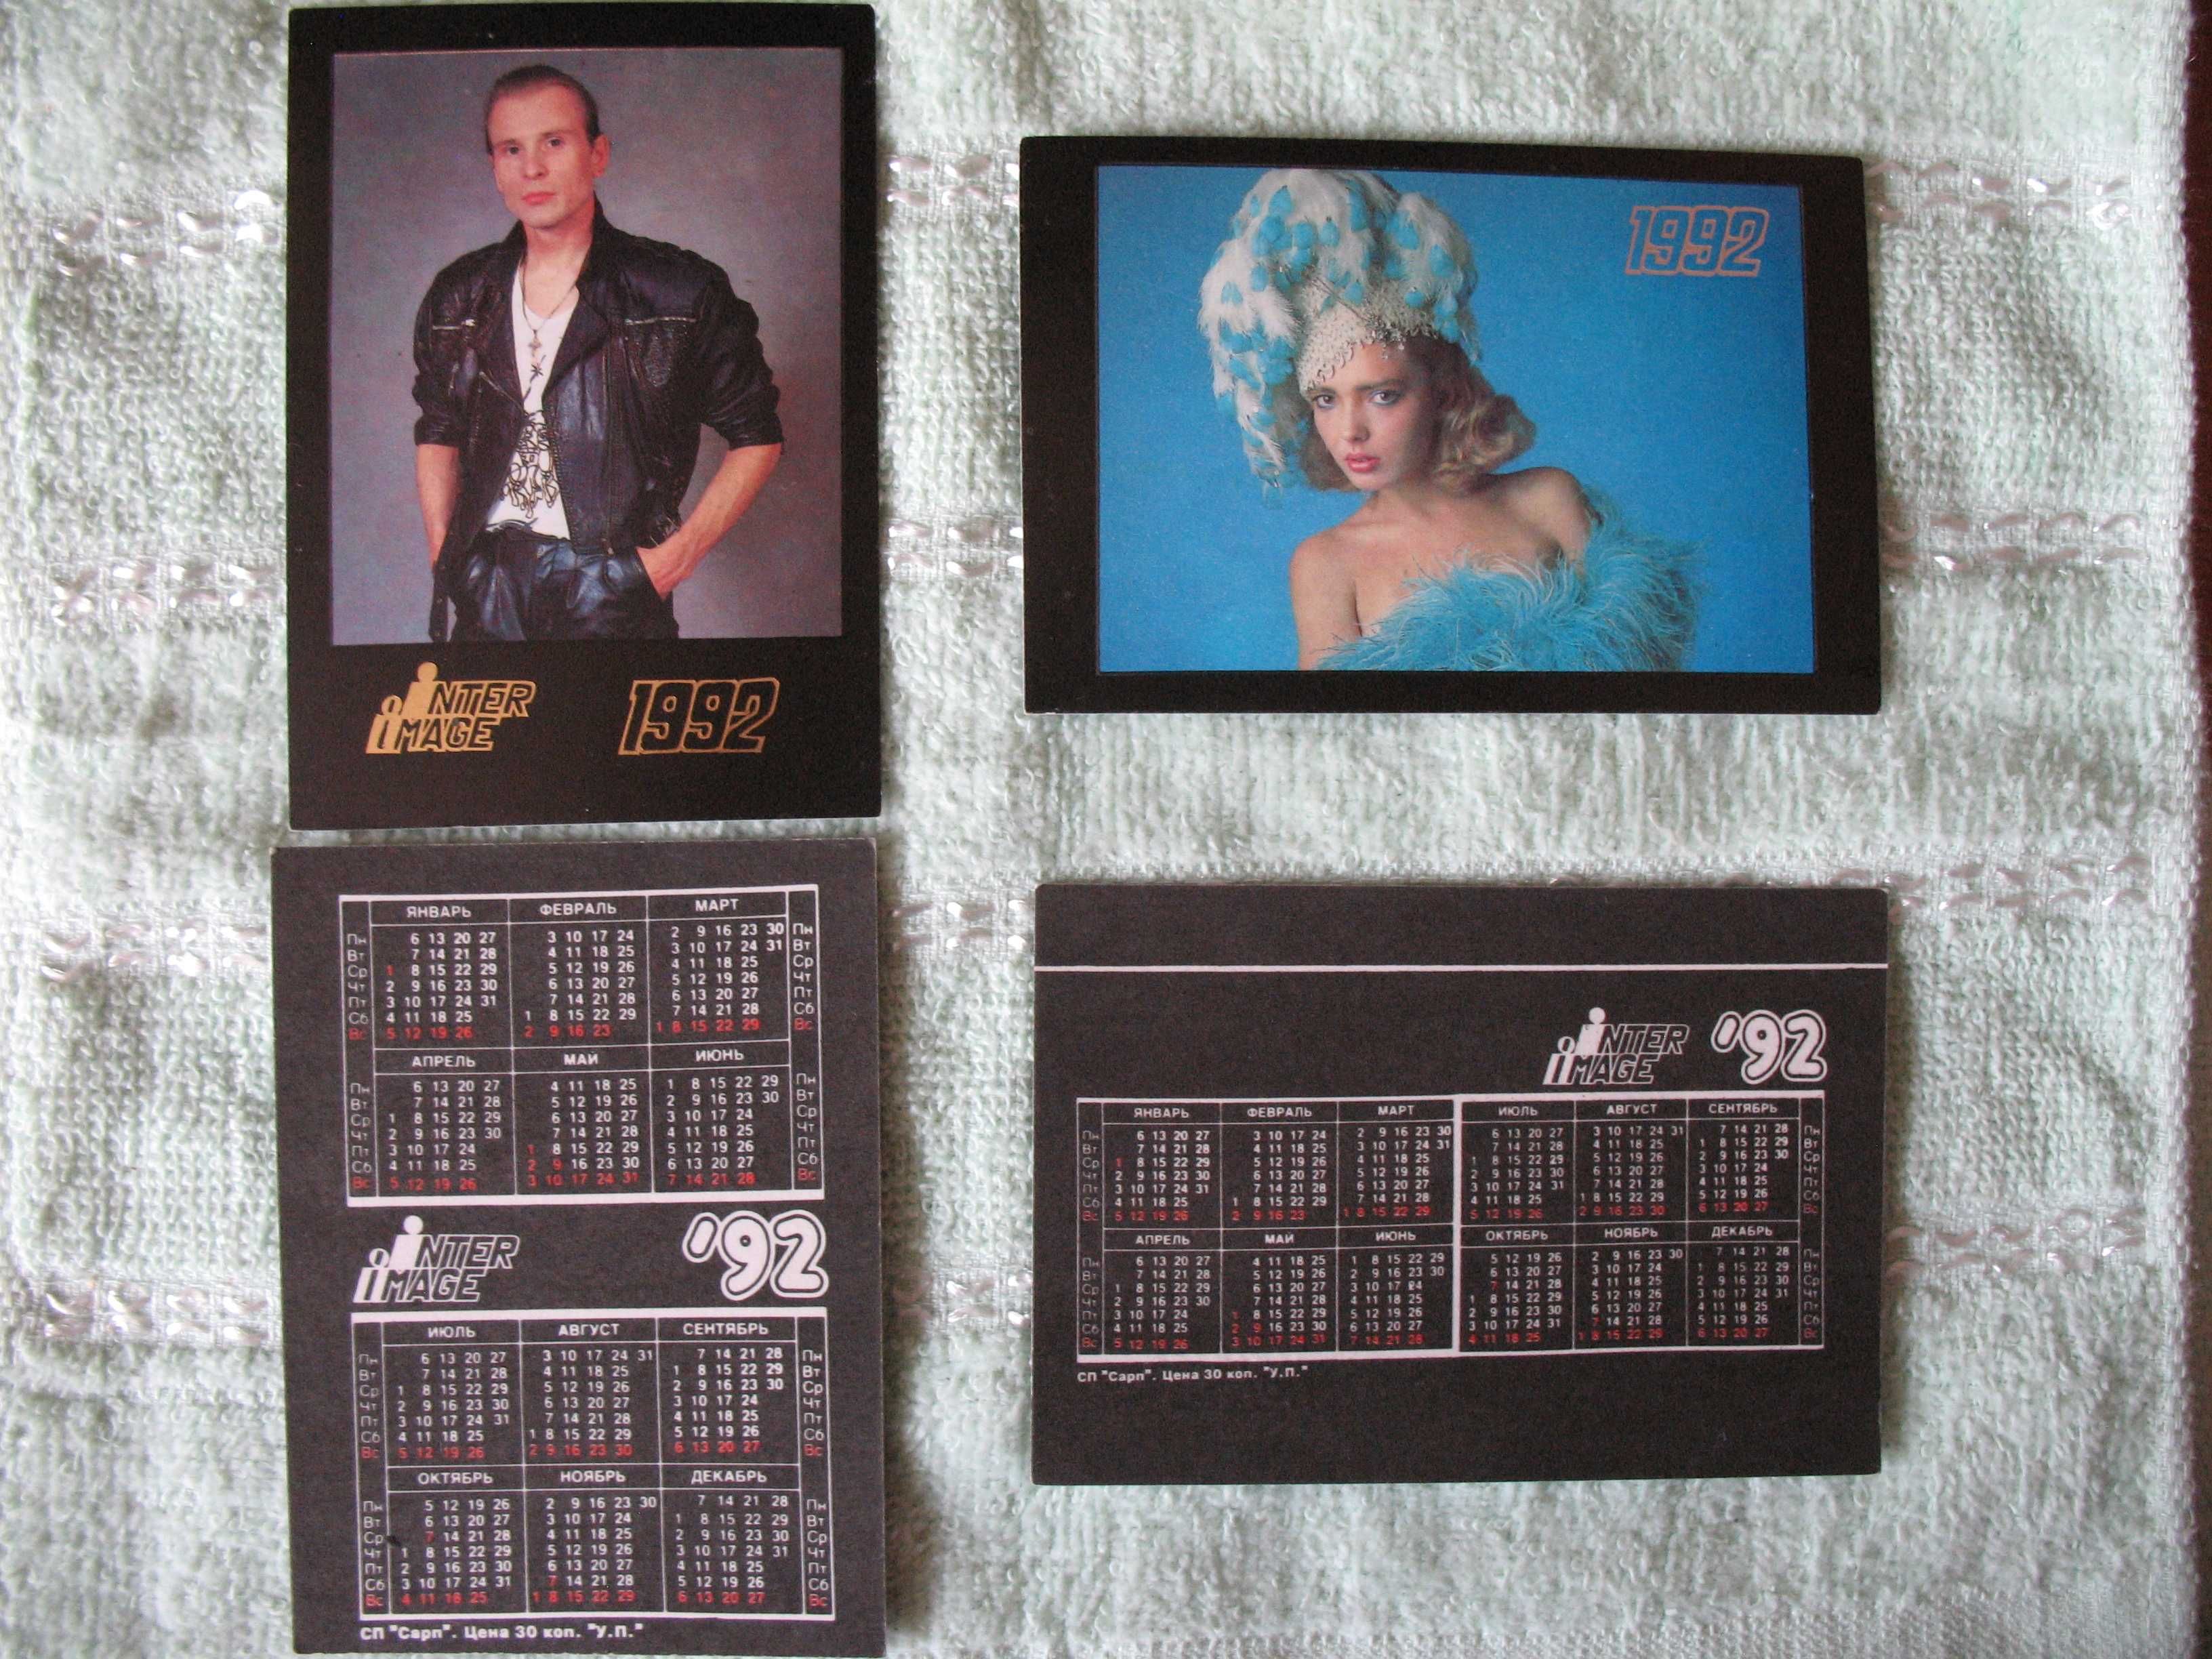 Календарики из серии "INTER IMAGE" 1992 год